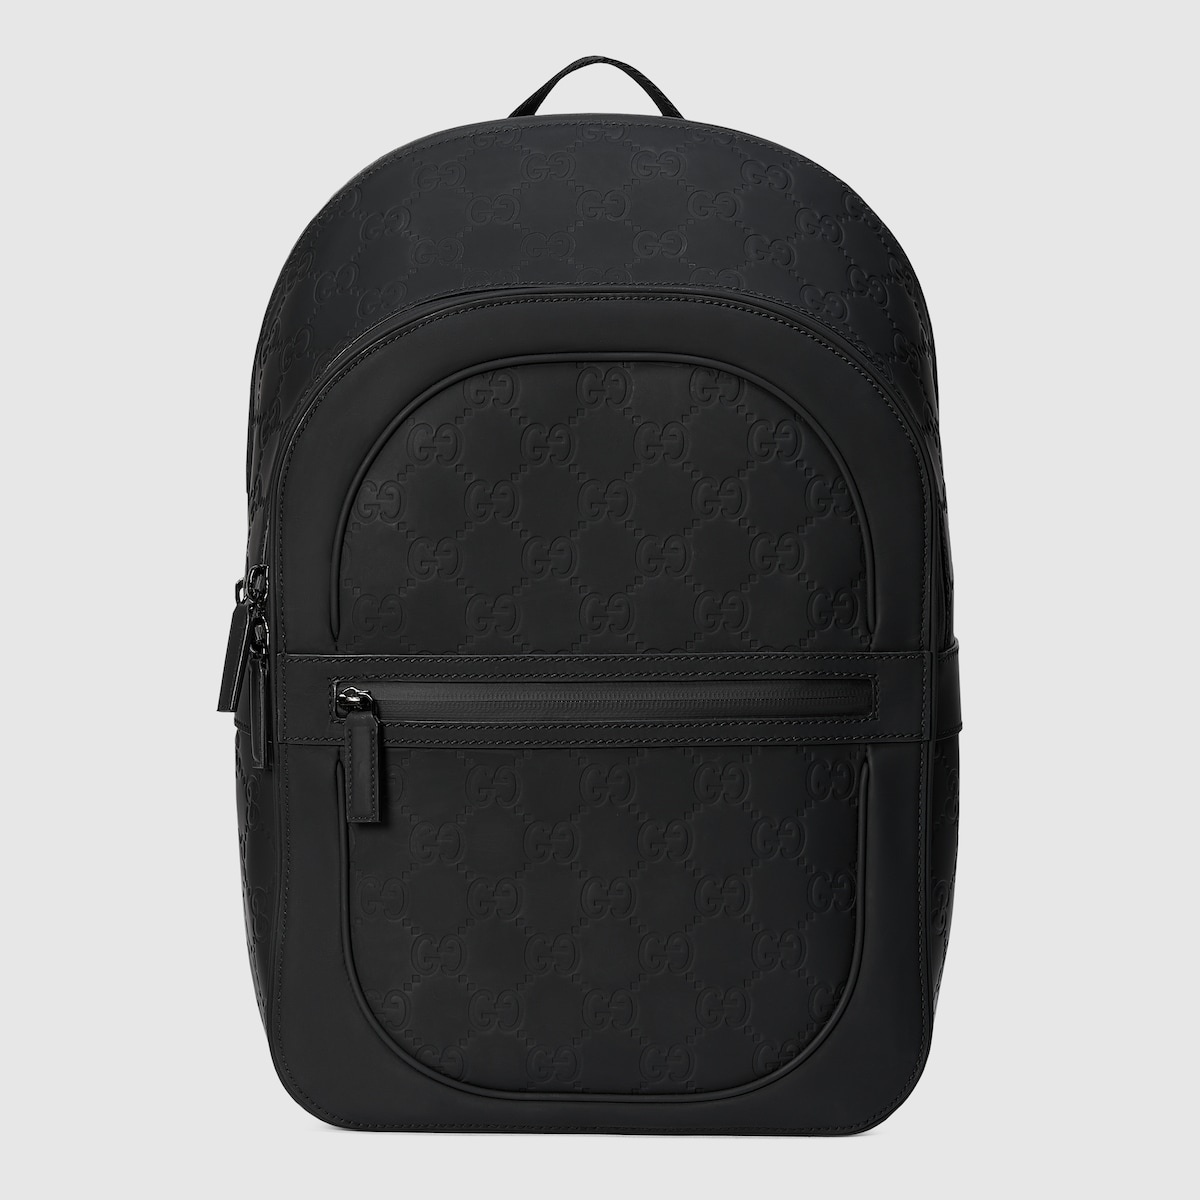 GG backpack - 1